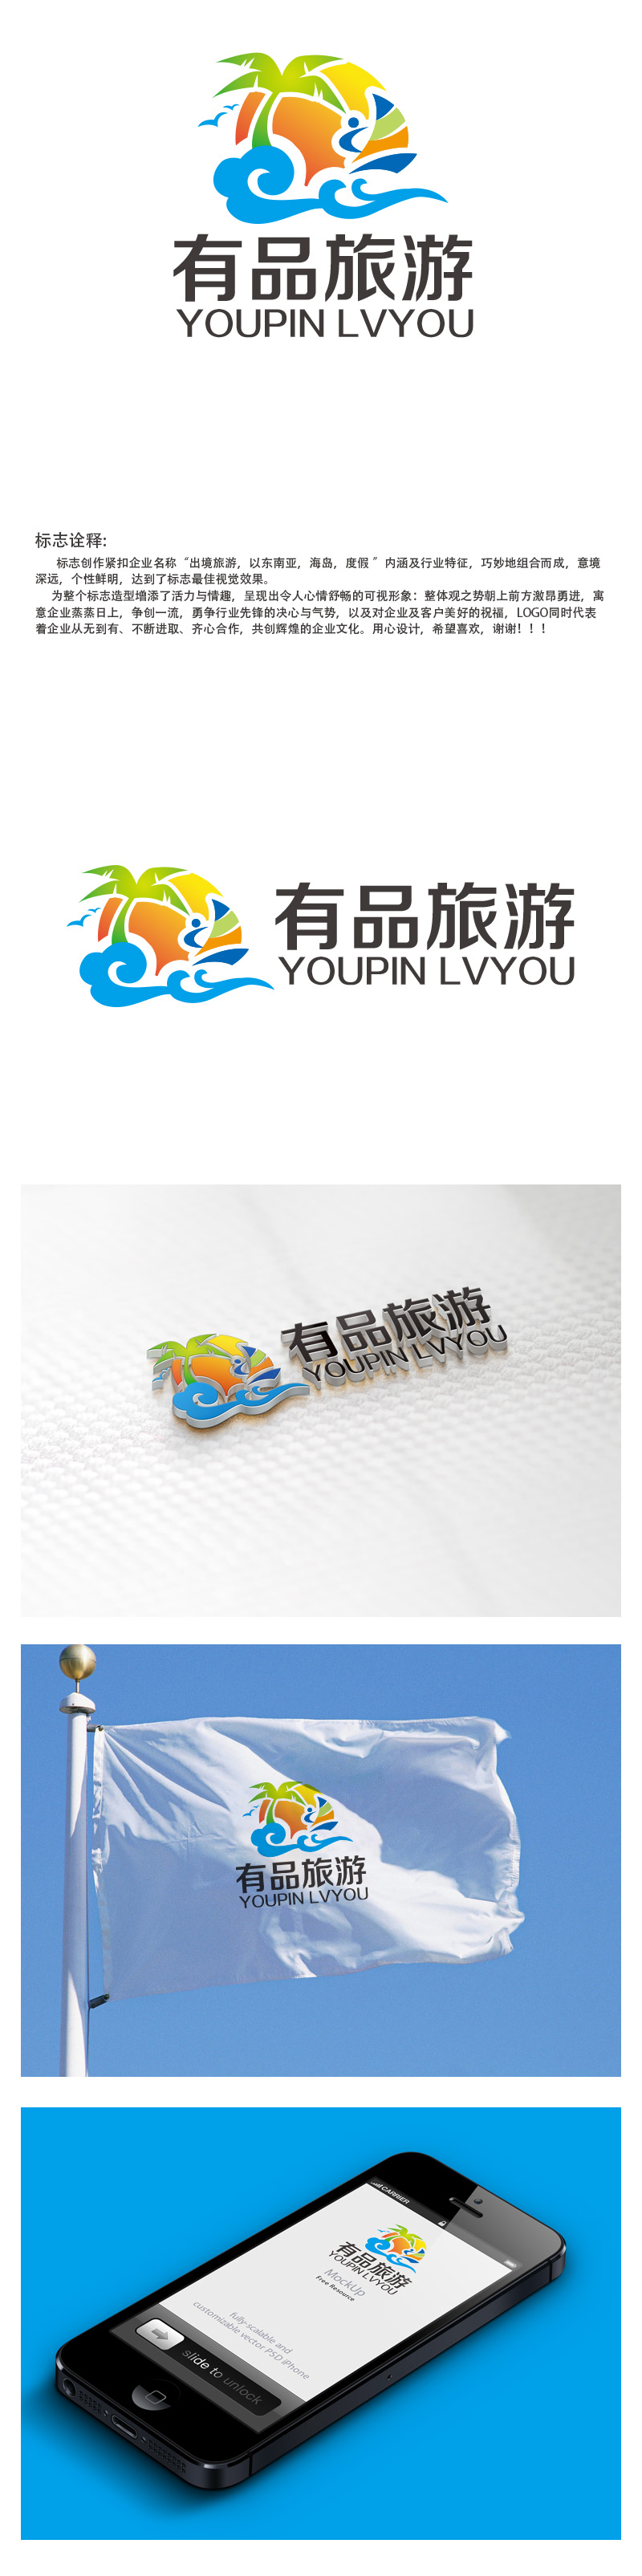 秦晓东的有品旅游logo设计